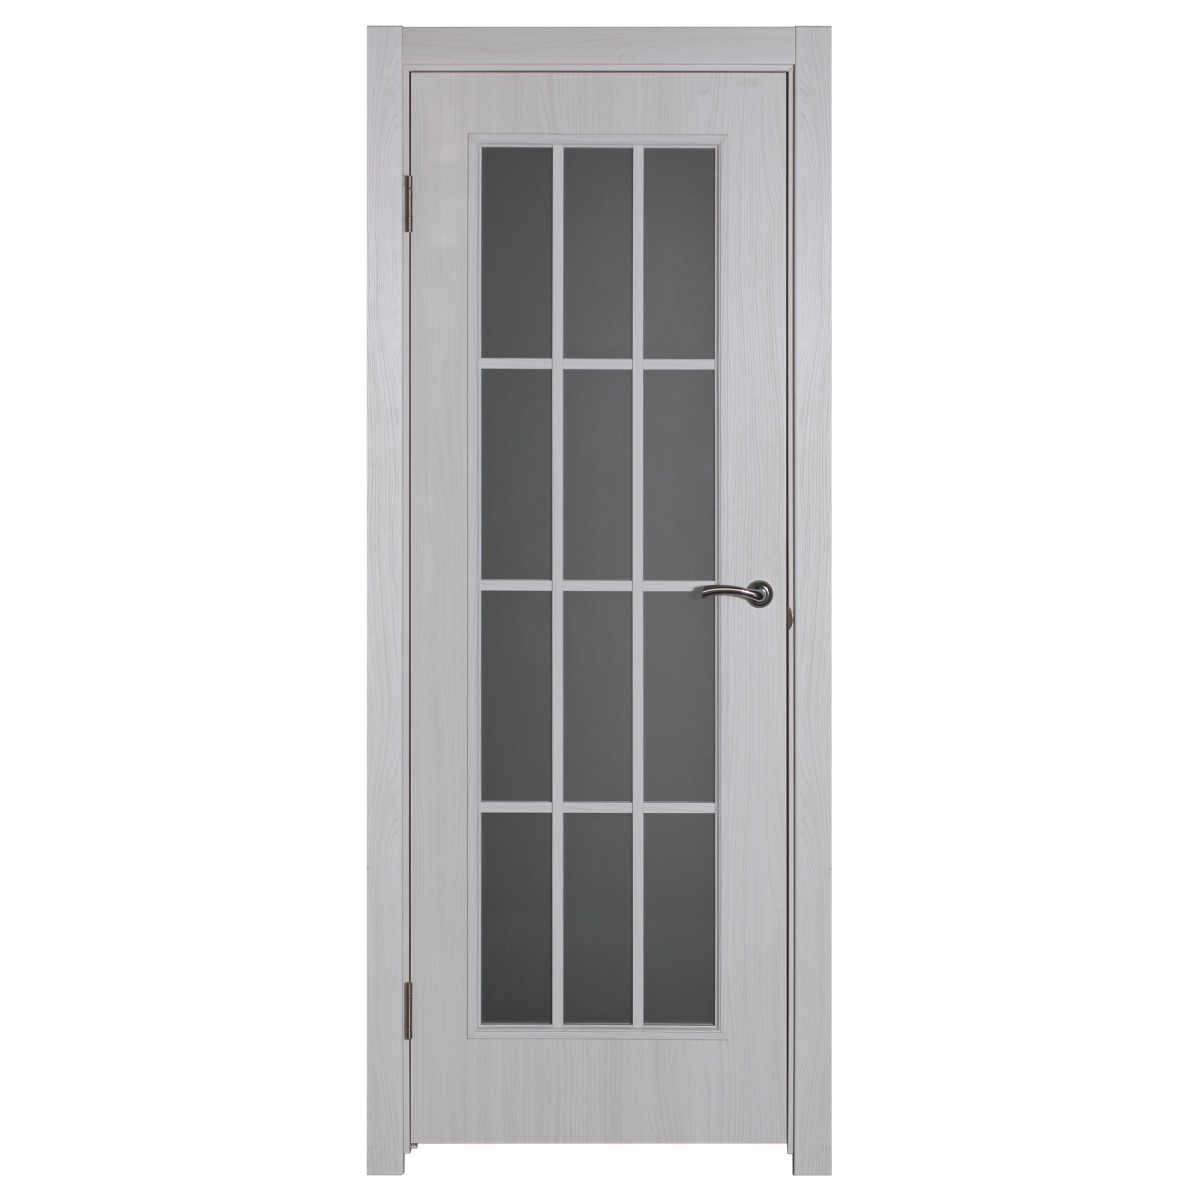 Дверь межкомнатная остеклённая Провенца 70x200 см цвет